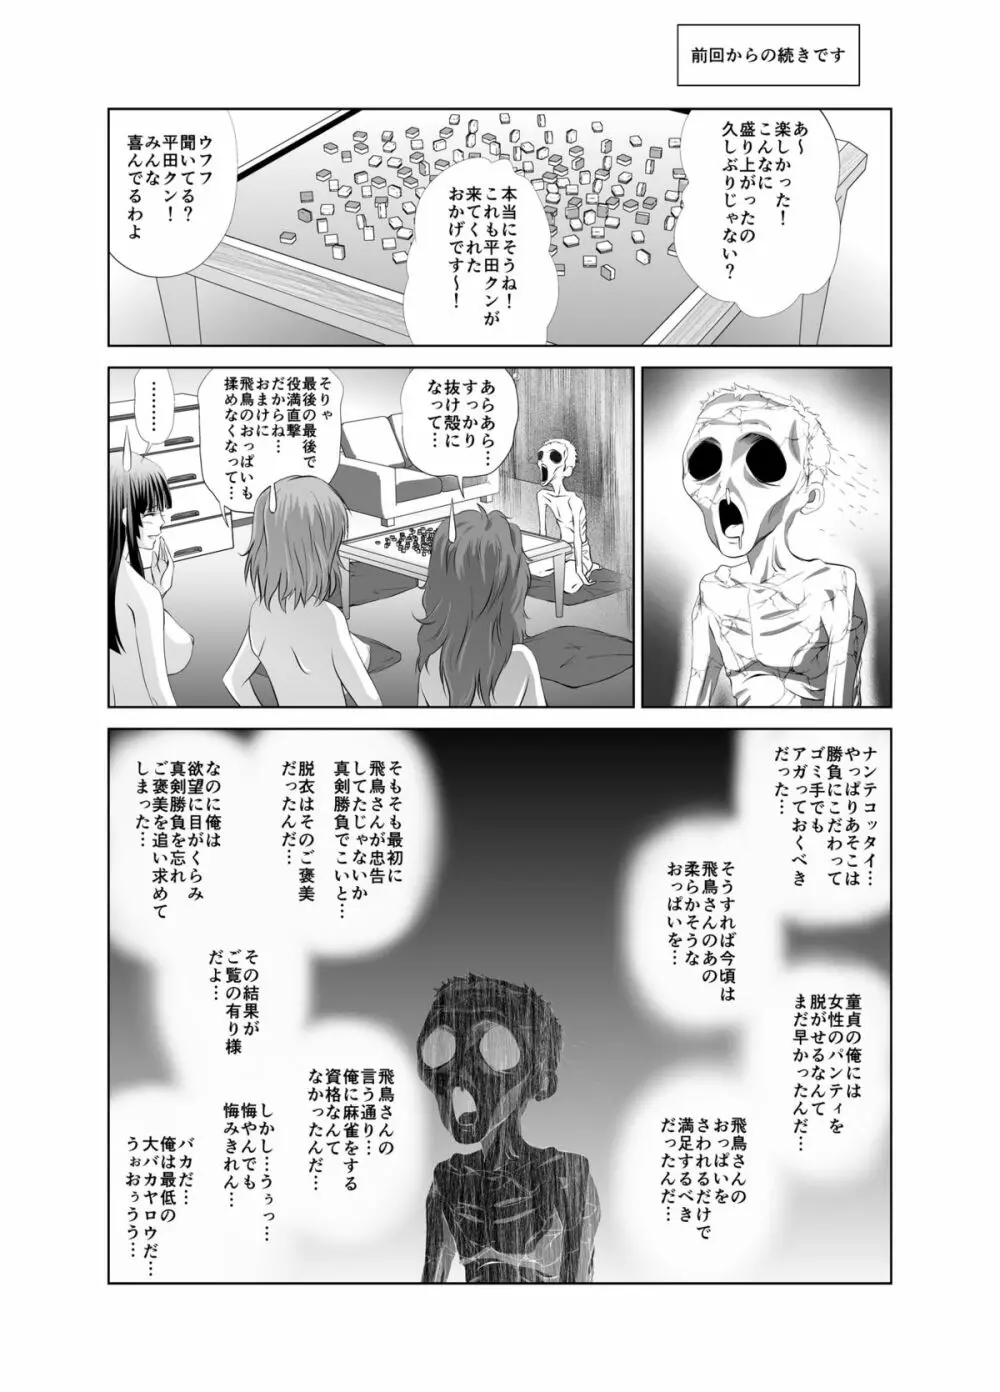 脱衣麻雀～漫画編～【完成版】 Page.29